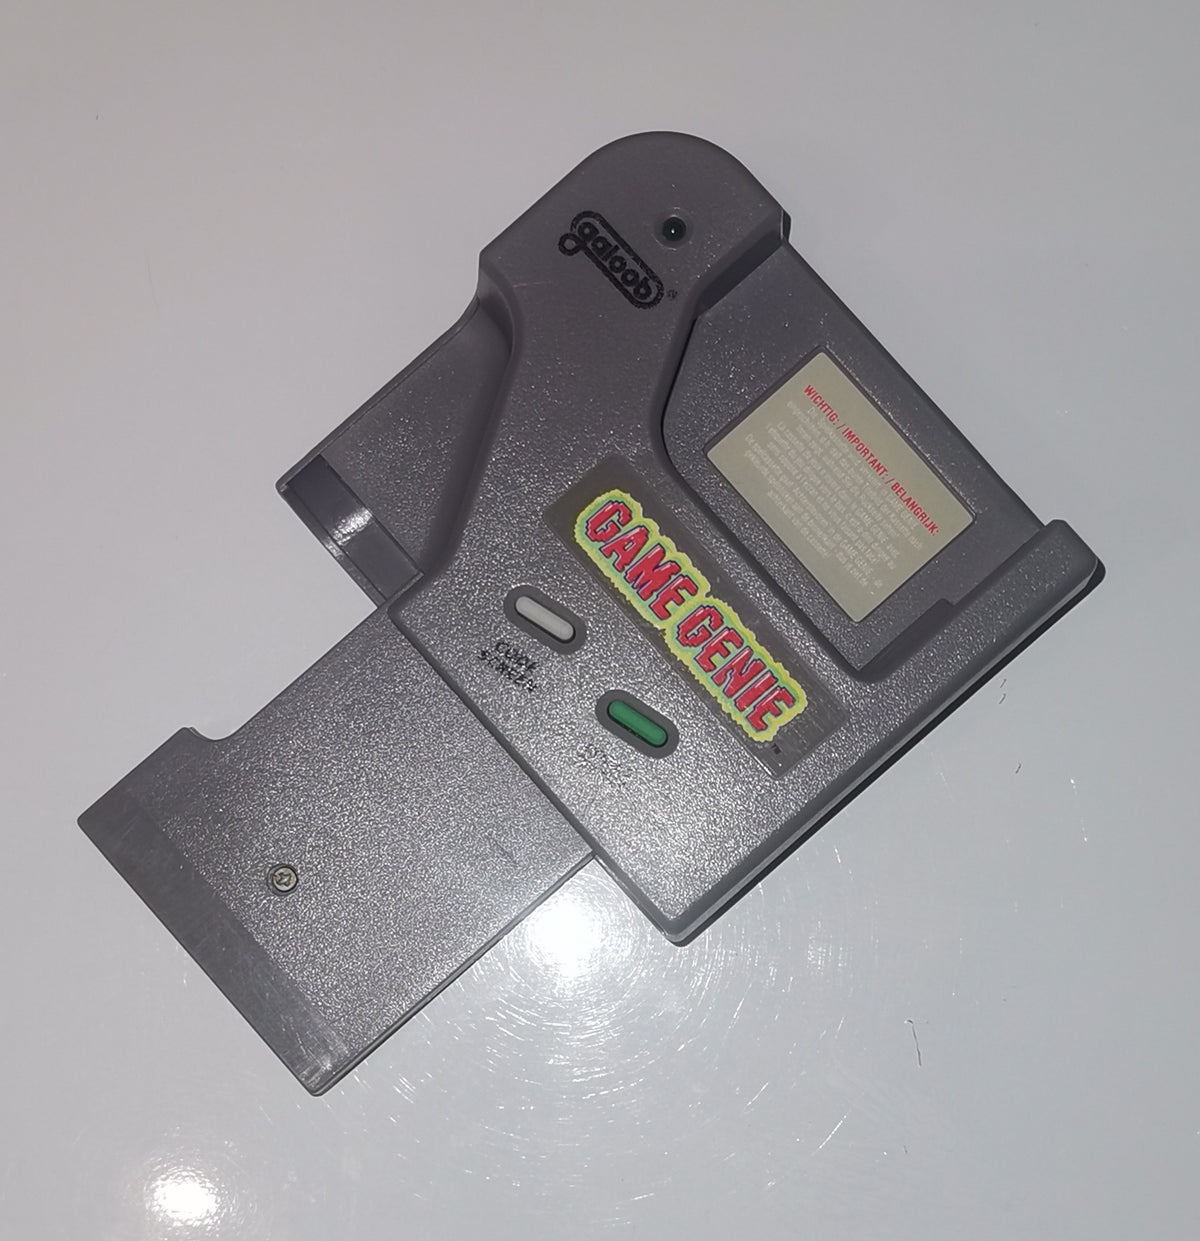 Game Genie (Cheatmodul) fuer Game Boy [Gut]